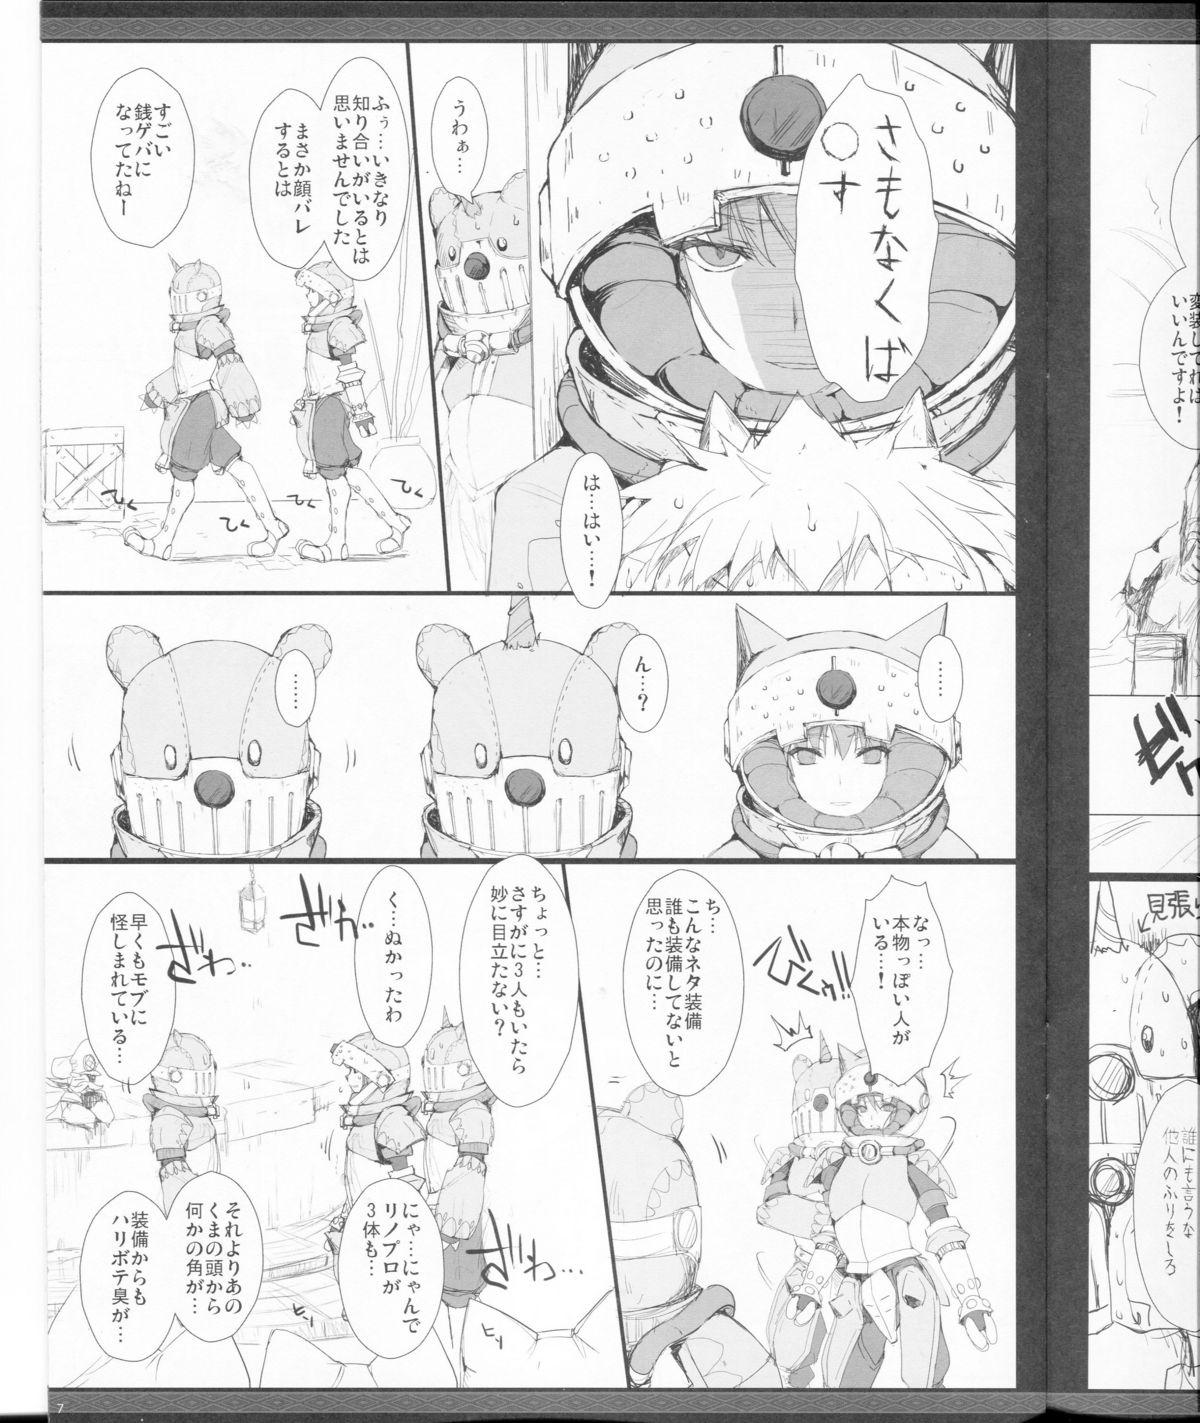 Hardcorend Monhan no Erohon G★★2 no Omake no Hon - Monster hunter Rabo - Page 7